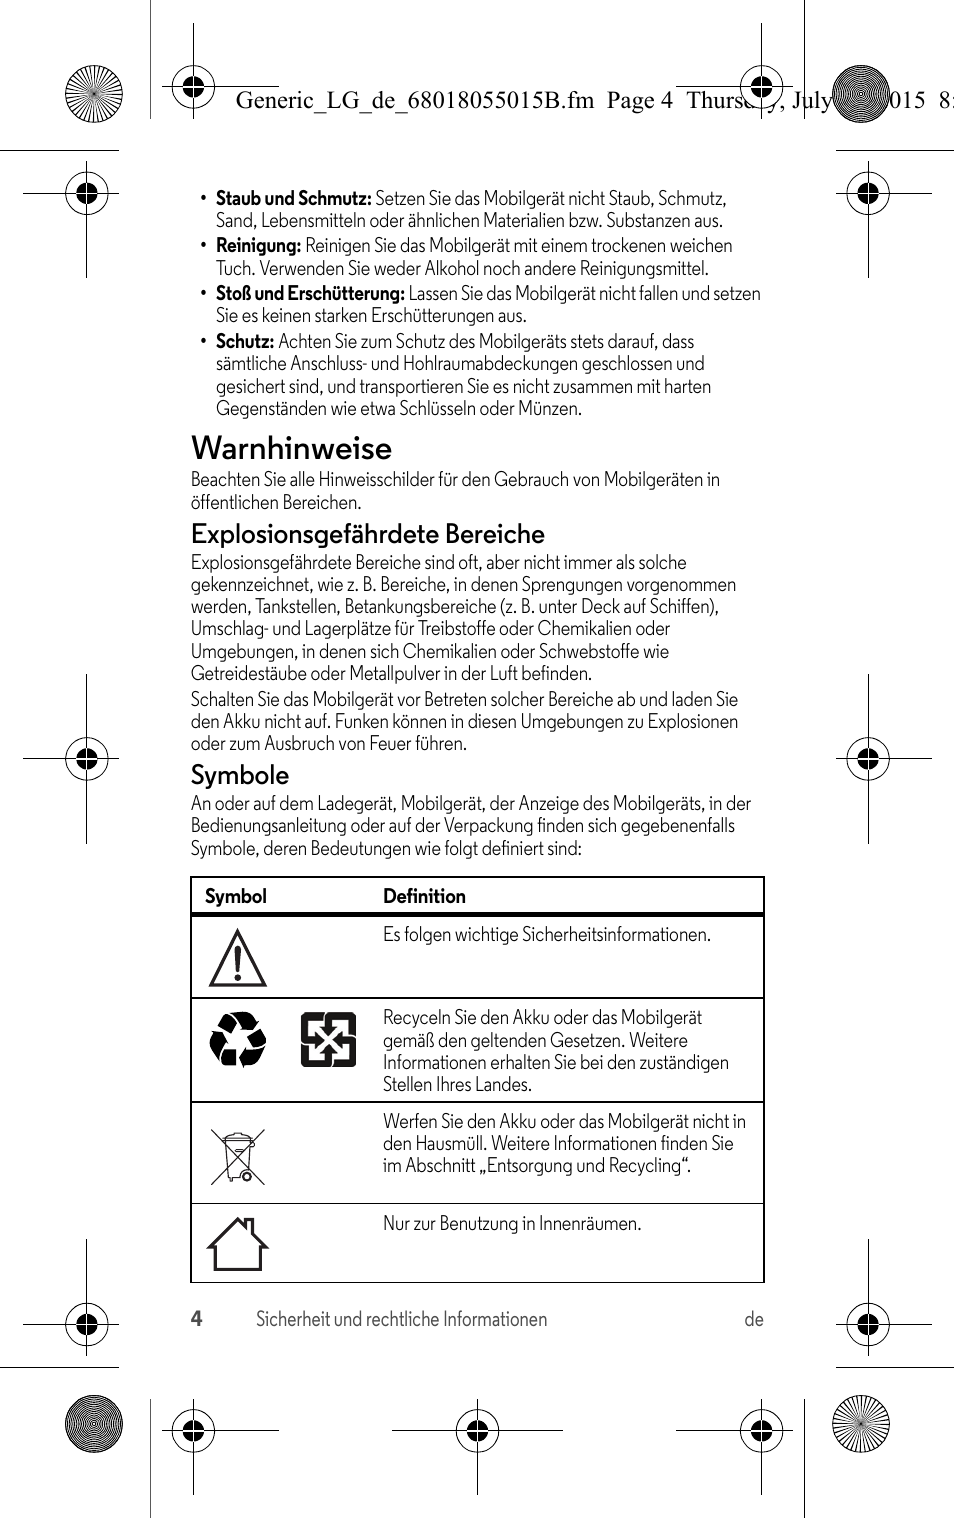 Warnhinweise, Explosionsgefährdete bereiche, Symbole | Motorola Moto X Play Benutzerhandbuch | Seite 6 / 24